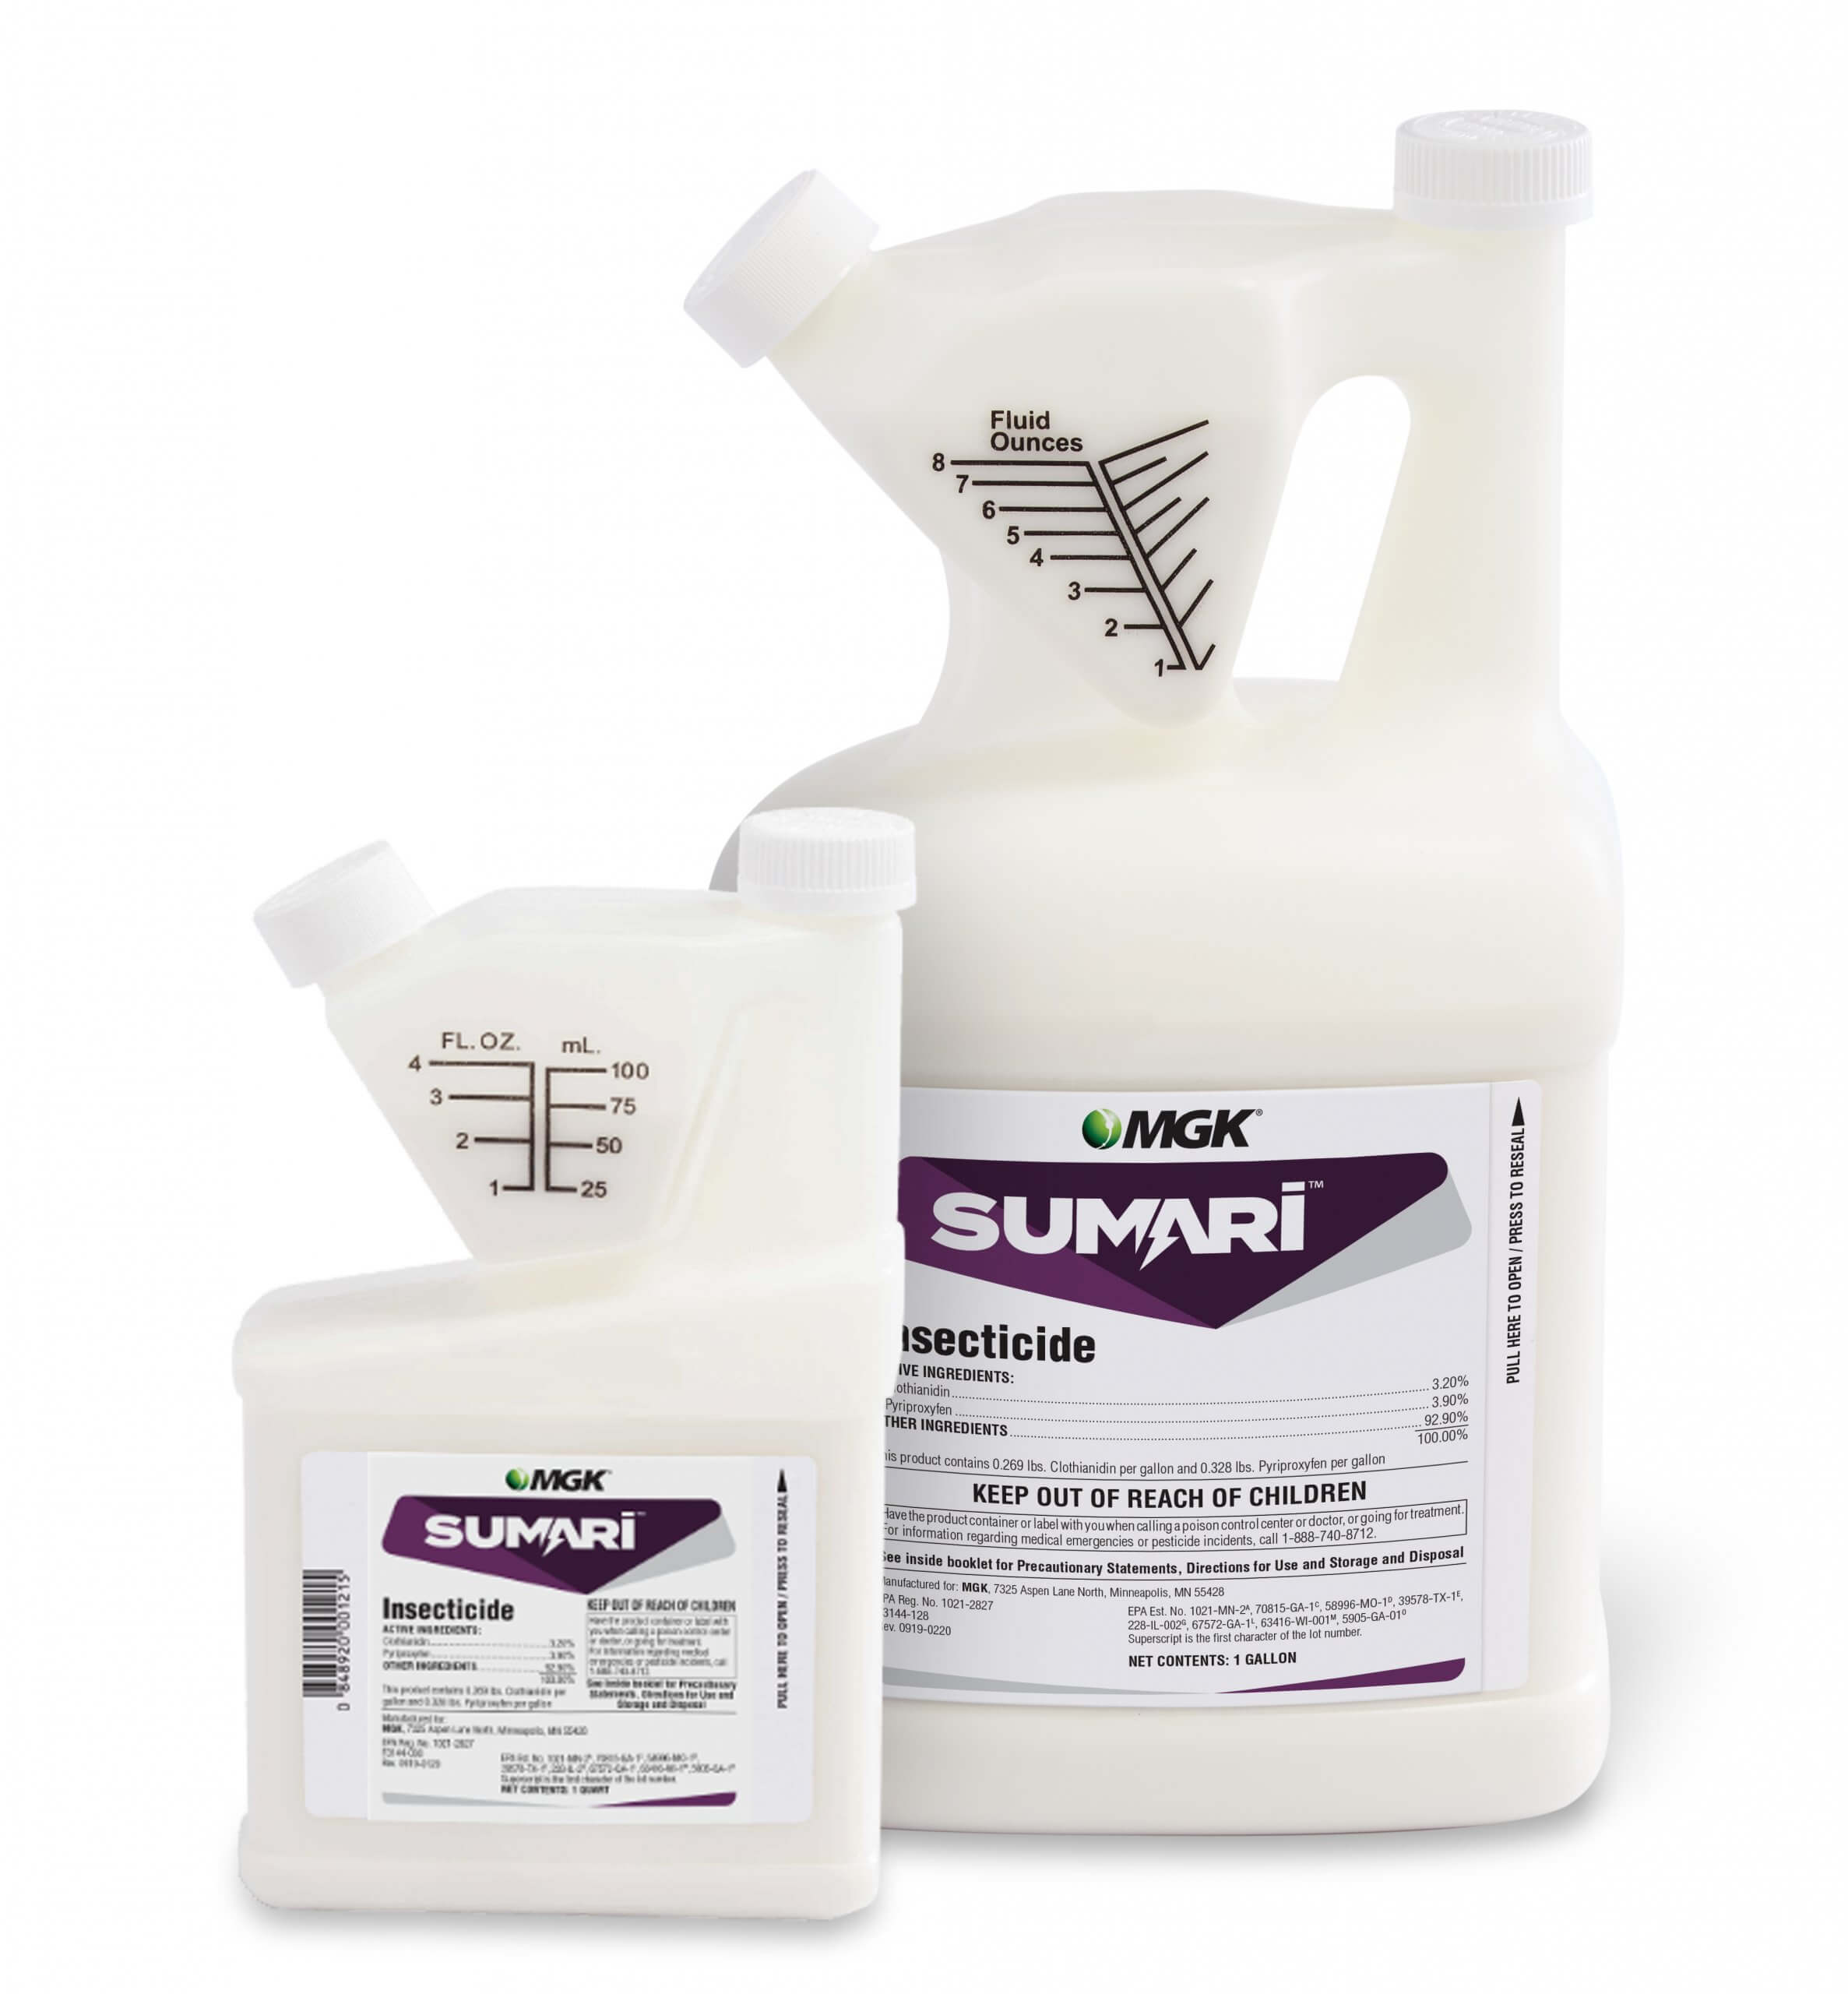 Sumari product - gallon size bottle and quart size bottle